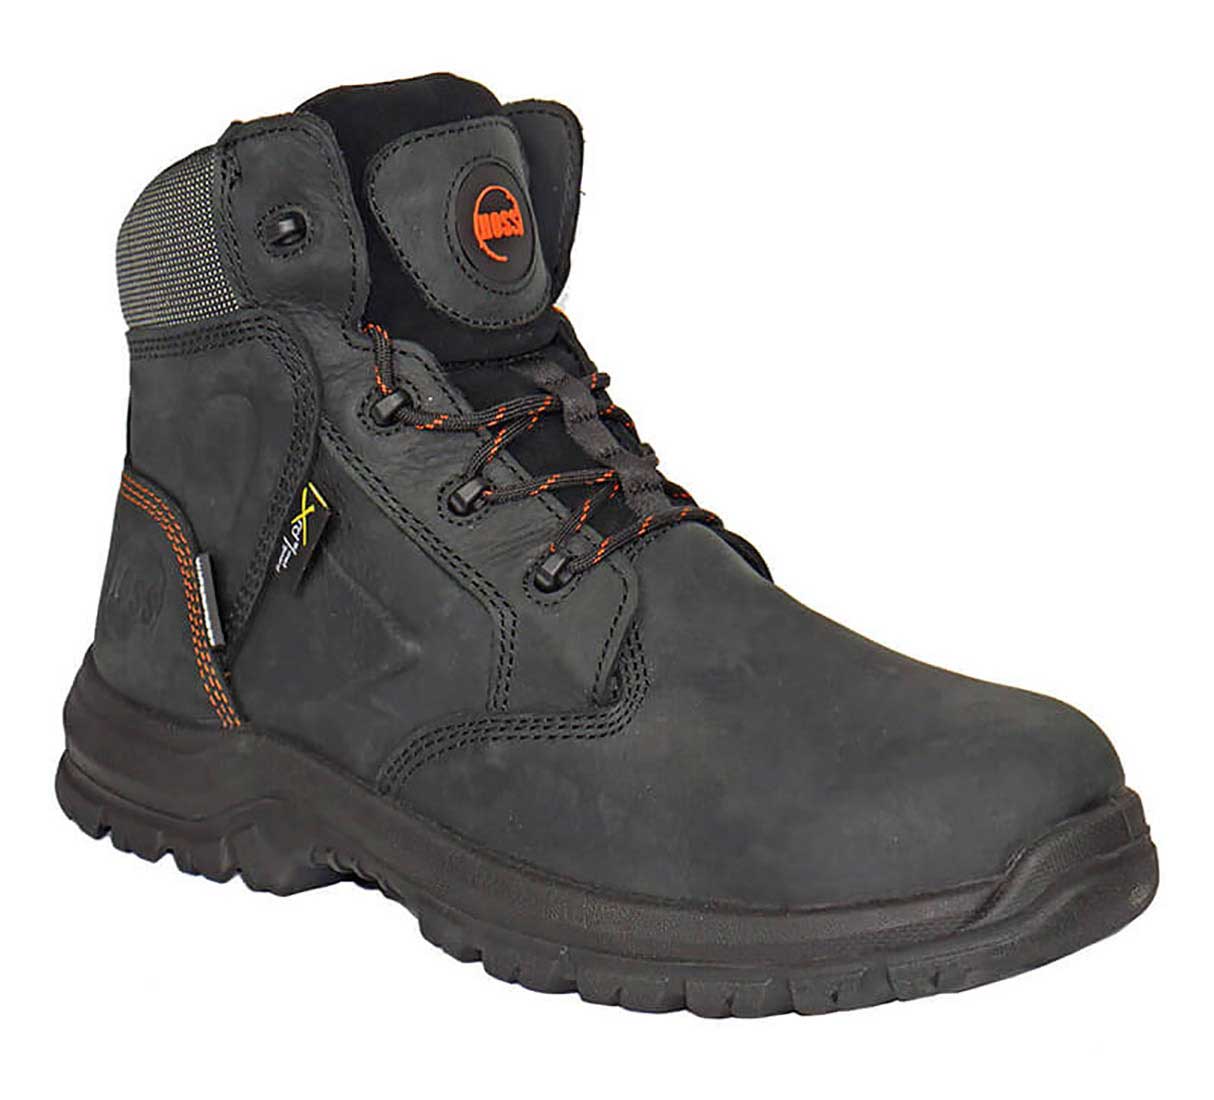 Hoss Boots 60140 Prowl Men's 6 Waterproof Composite Toe Work Boot - Extra Depth